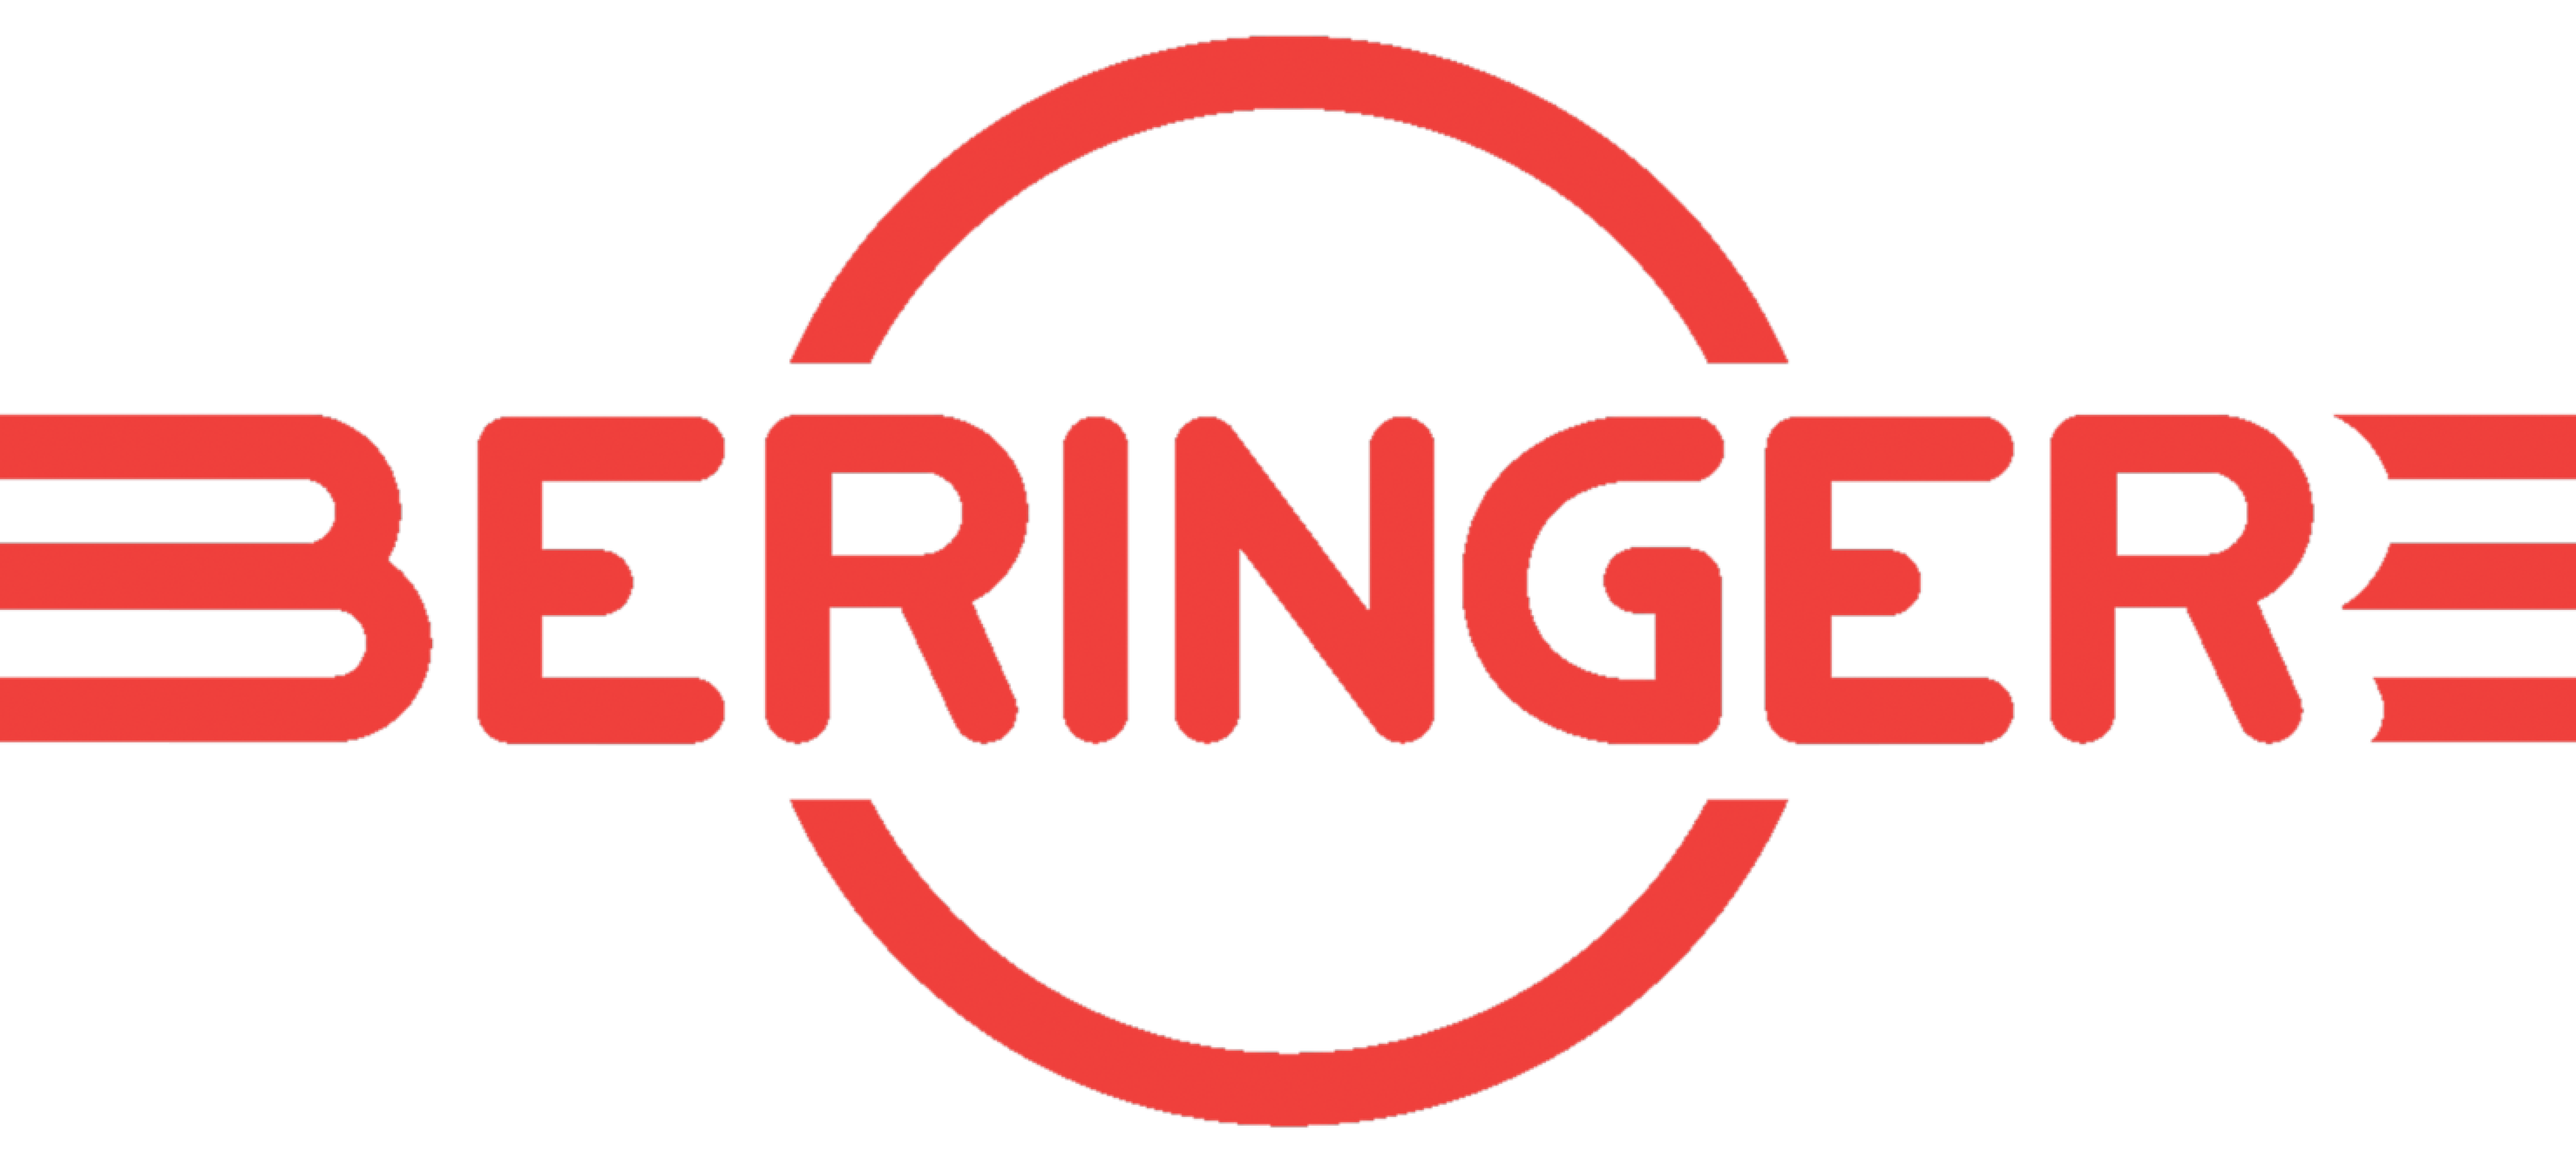 logo-beringer-14-01-2016